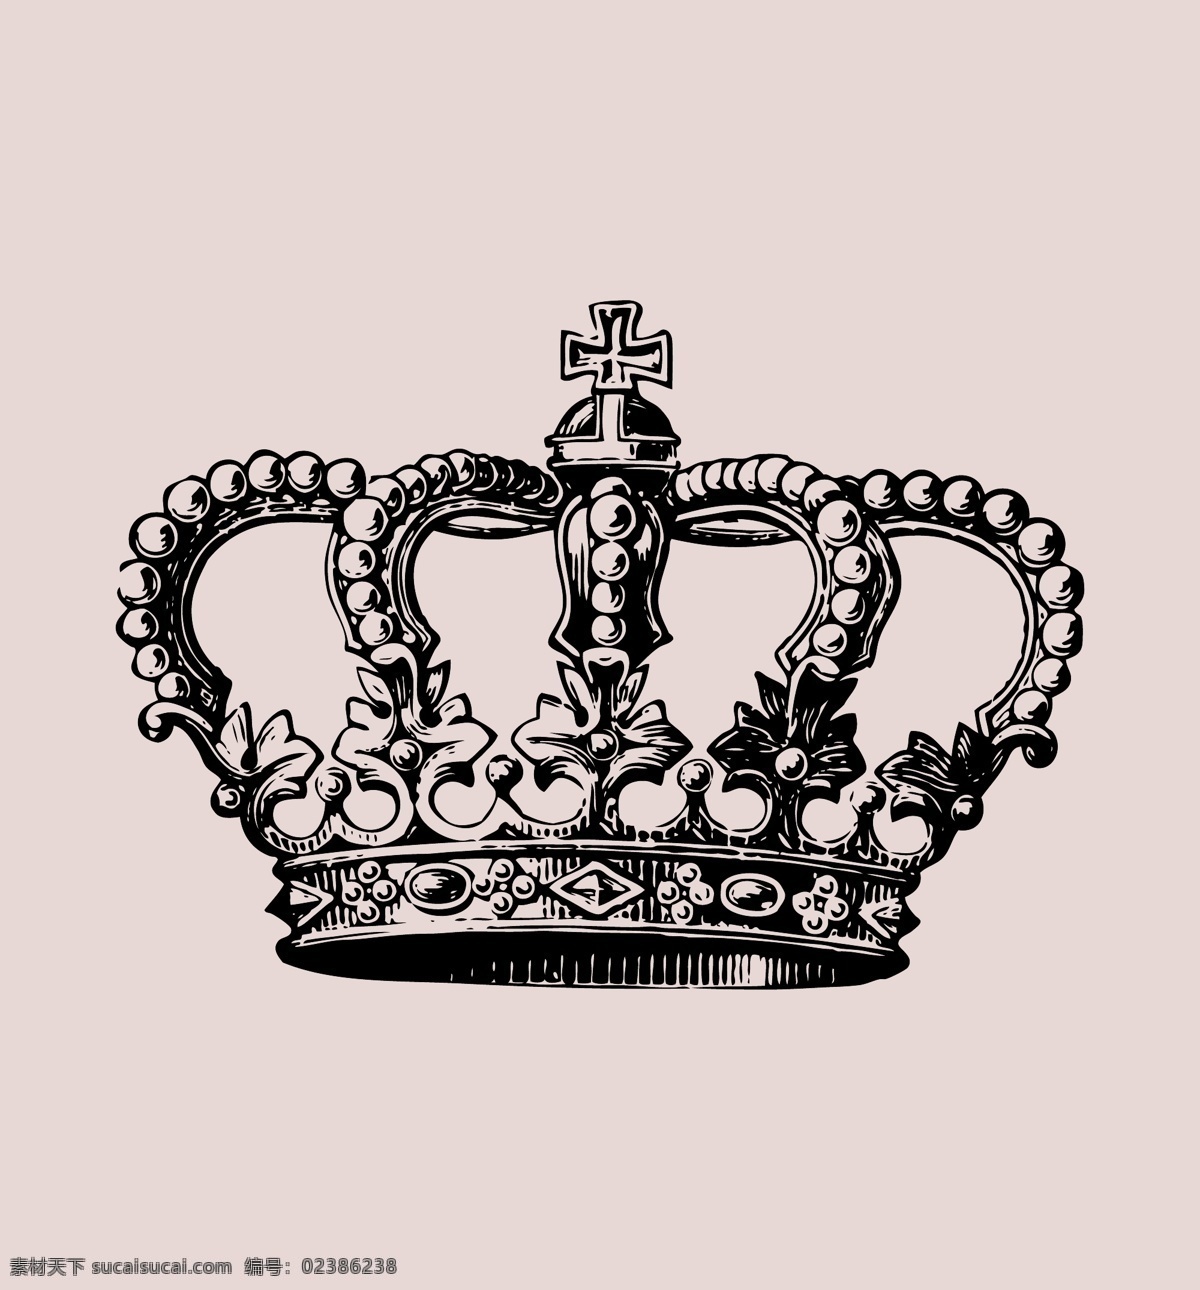 皇冠 欧式 数码印花 时尚 英伦风情 北欧简约 抱枕 纺织品 图案 图案素材 底纹边框 其他素材